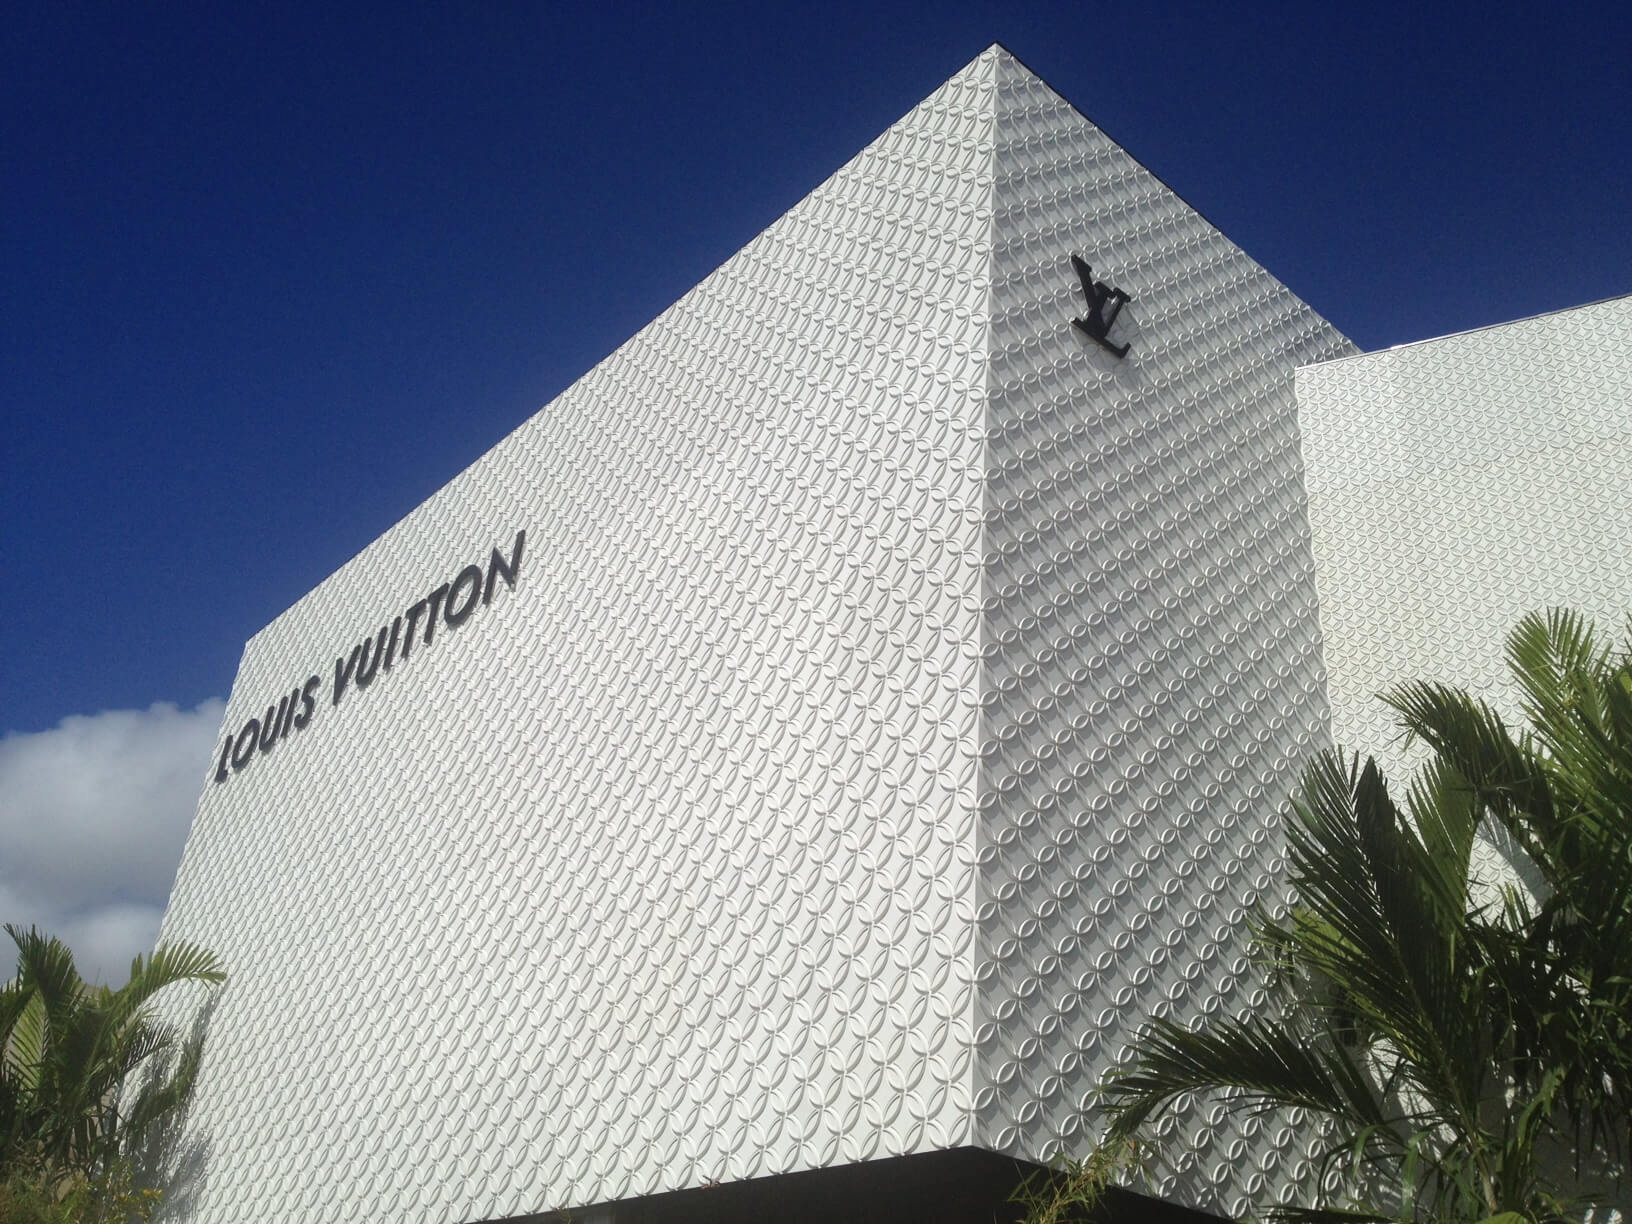 Louis Vuitton - Aventura Maison in South Florida